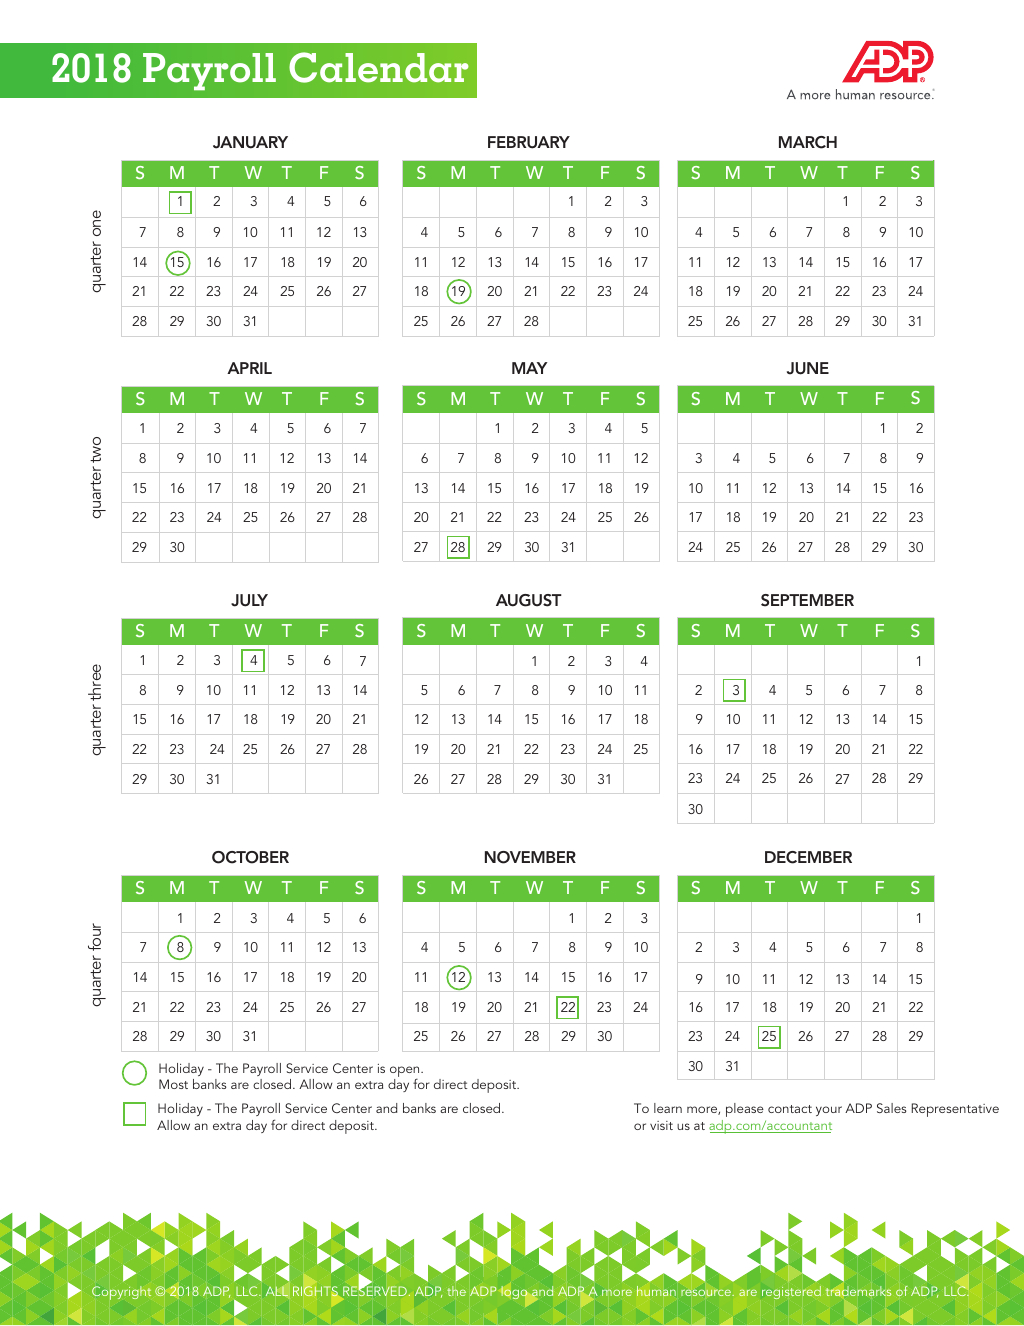 2020 Payroll Calendar Adp Canada | Payroll Calendar 2020